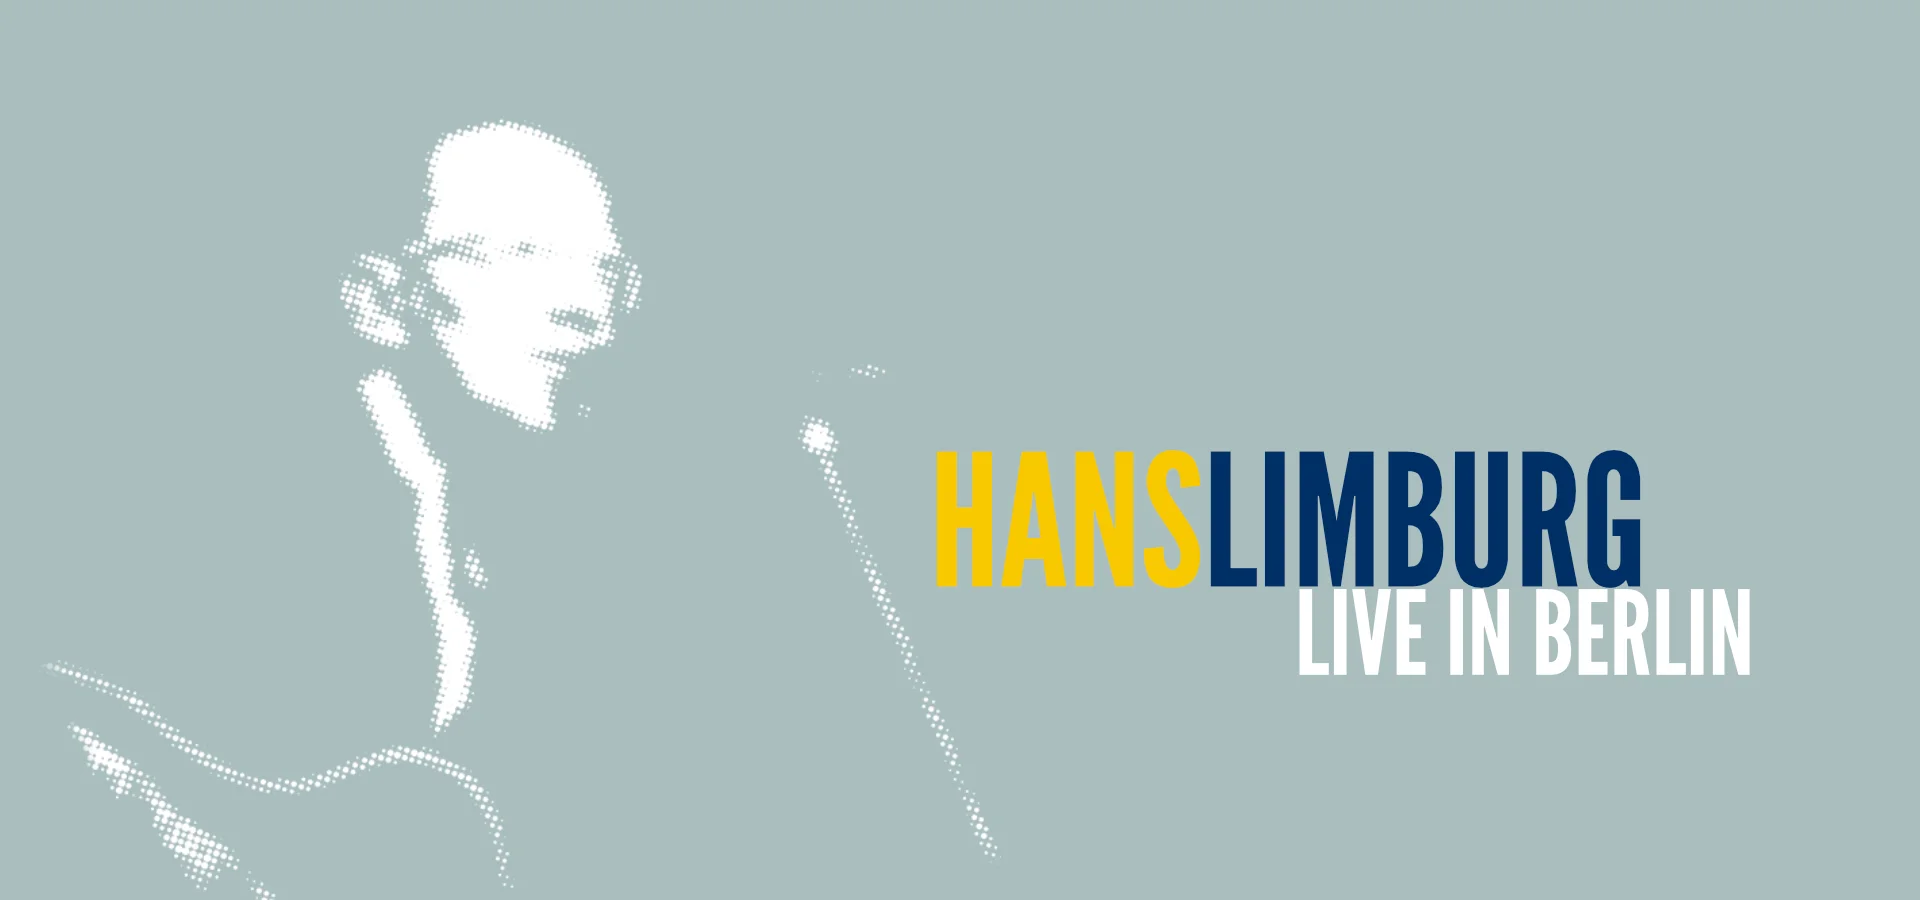 Artwork „Hans Limburg live in Berlin“